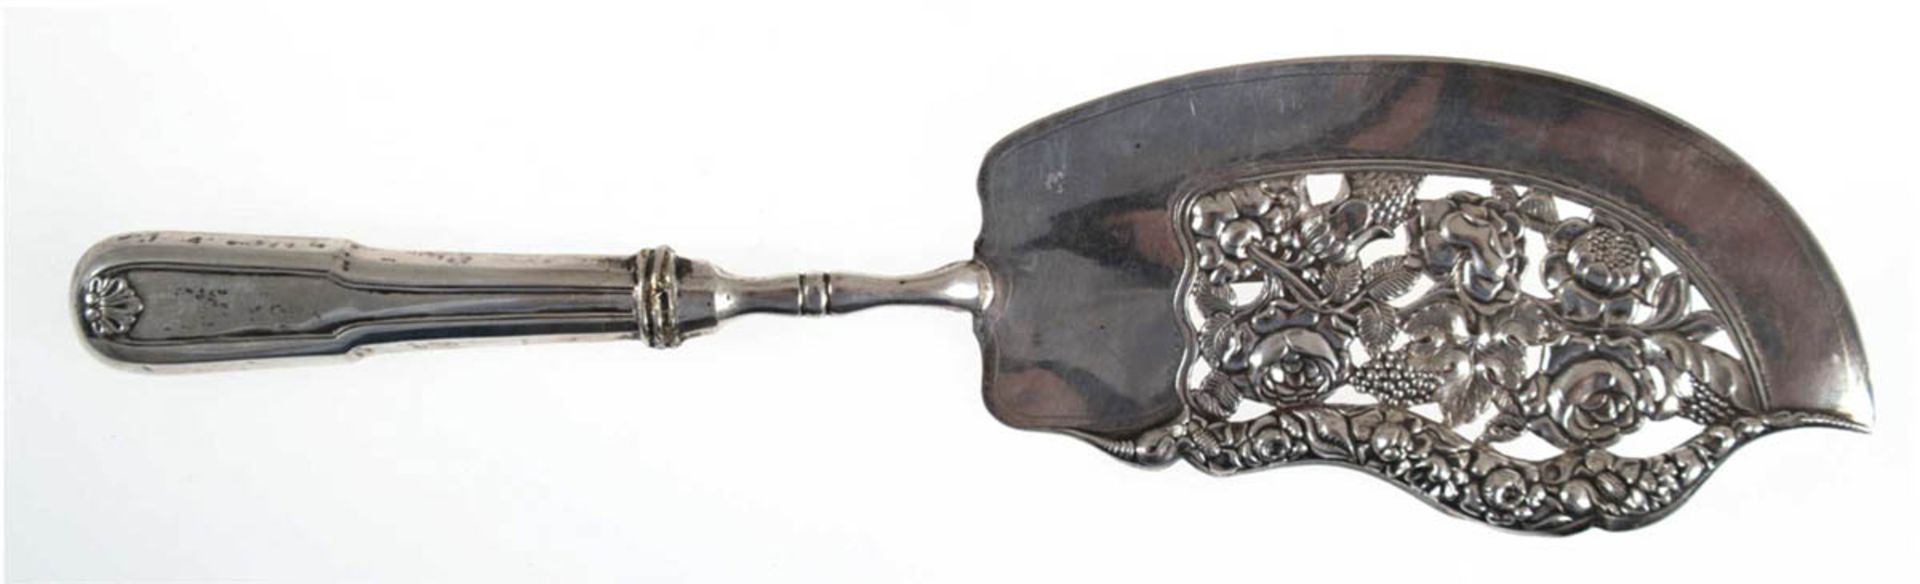 Biedermeier-Heber, Kopenhagen 1835, Silber, punziert, ca. 86 g, durchbrochen gearbeiteteSchaufel,